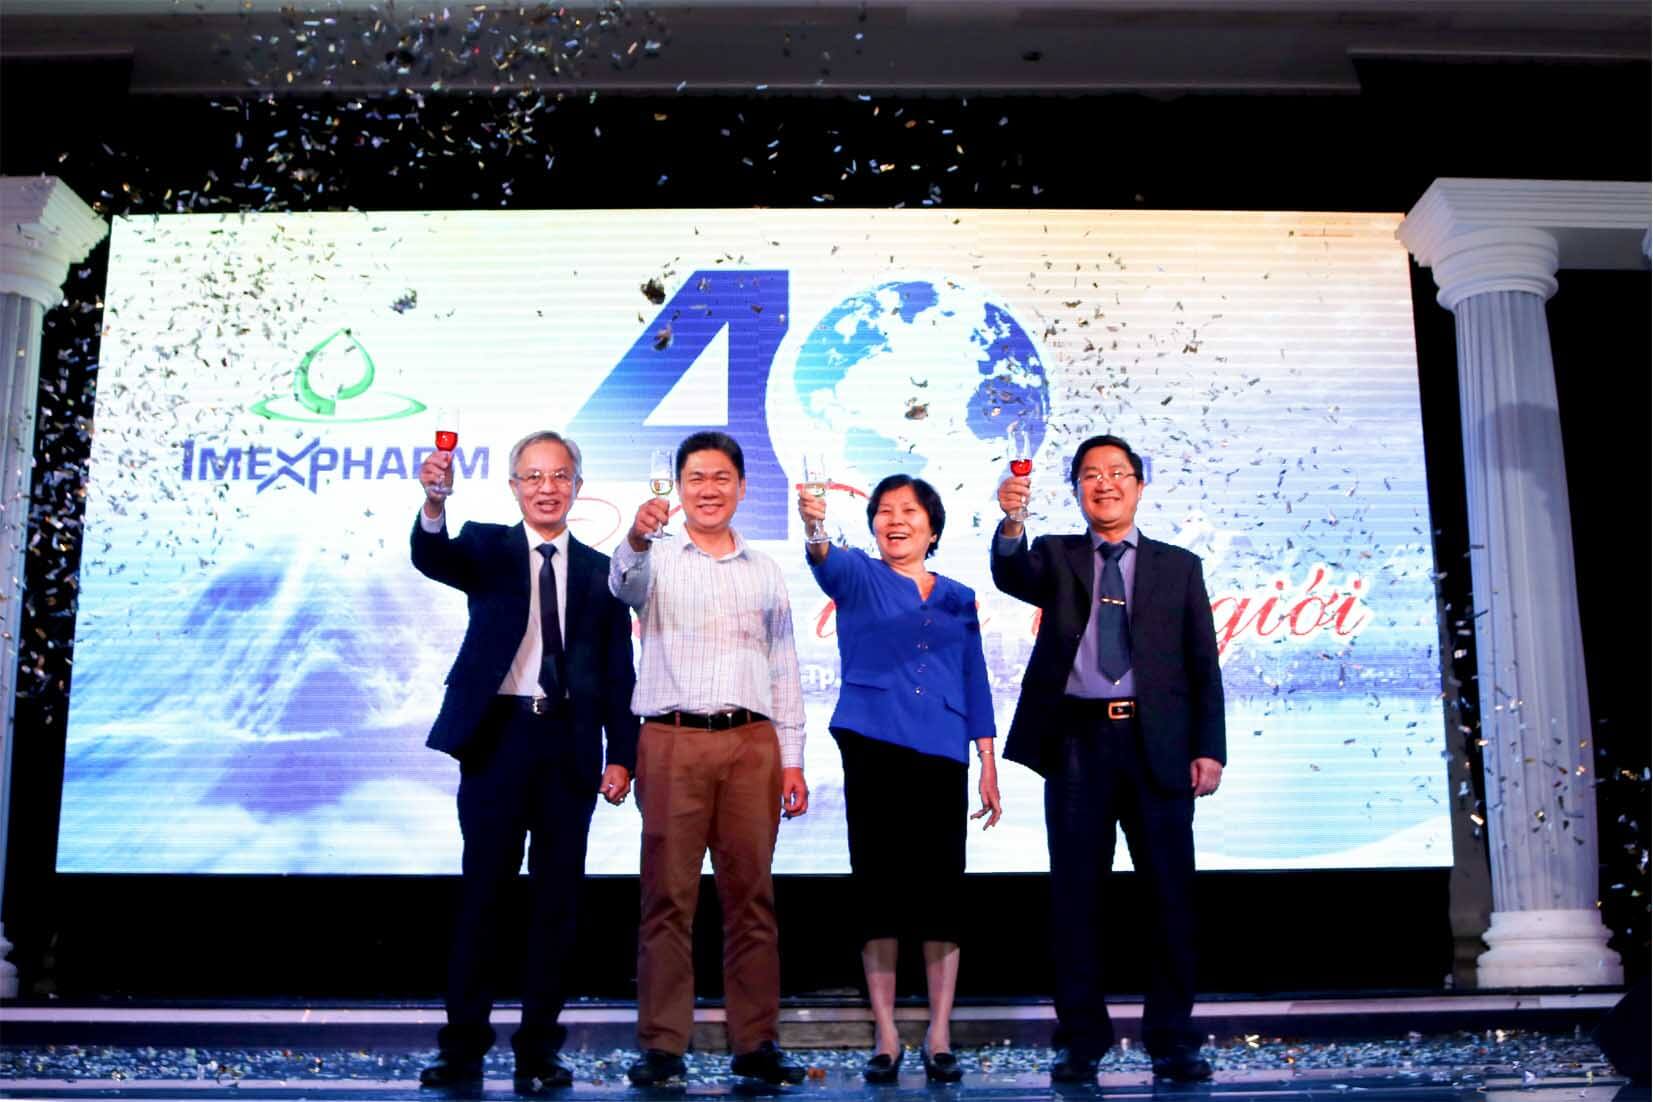 Hội nghị khách hàng "Imexphaem - 40 năm vươn tầm thế giới"